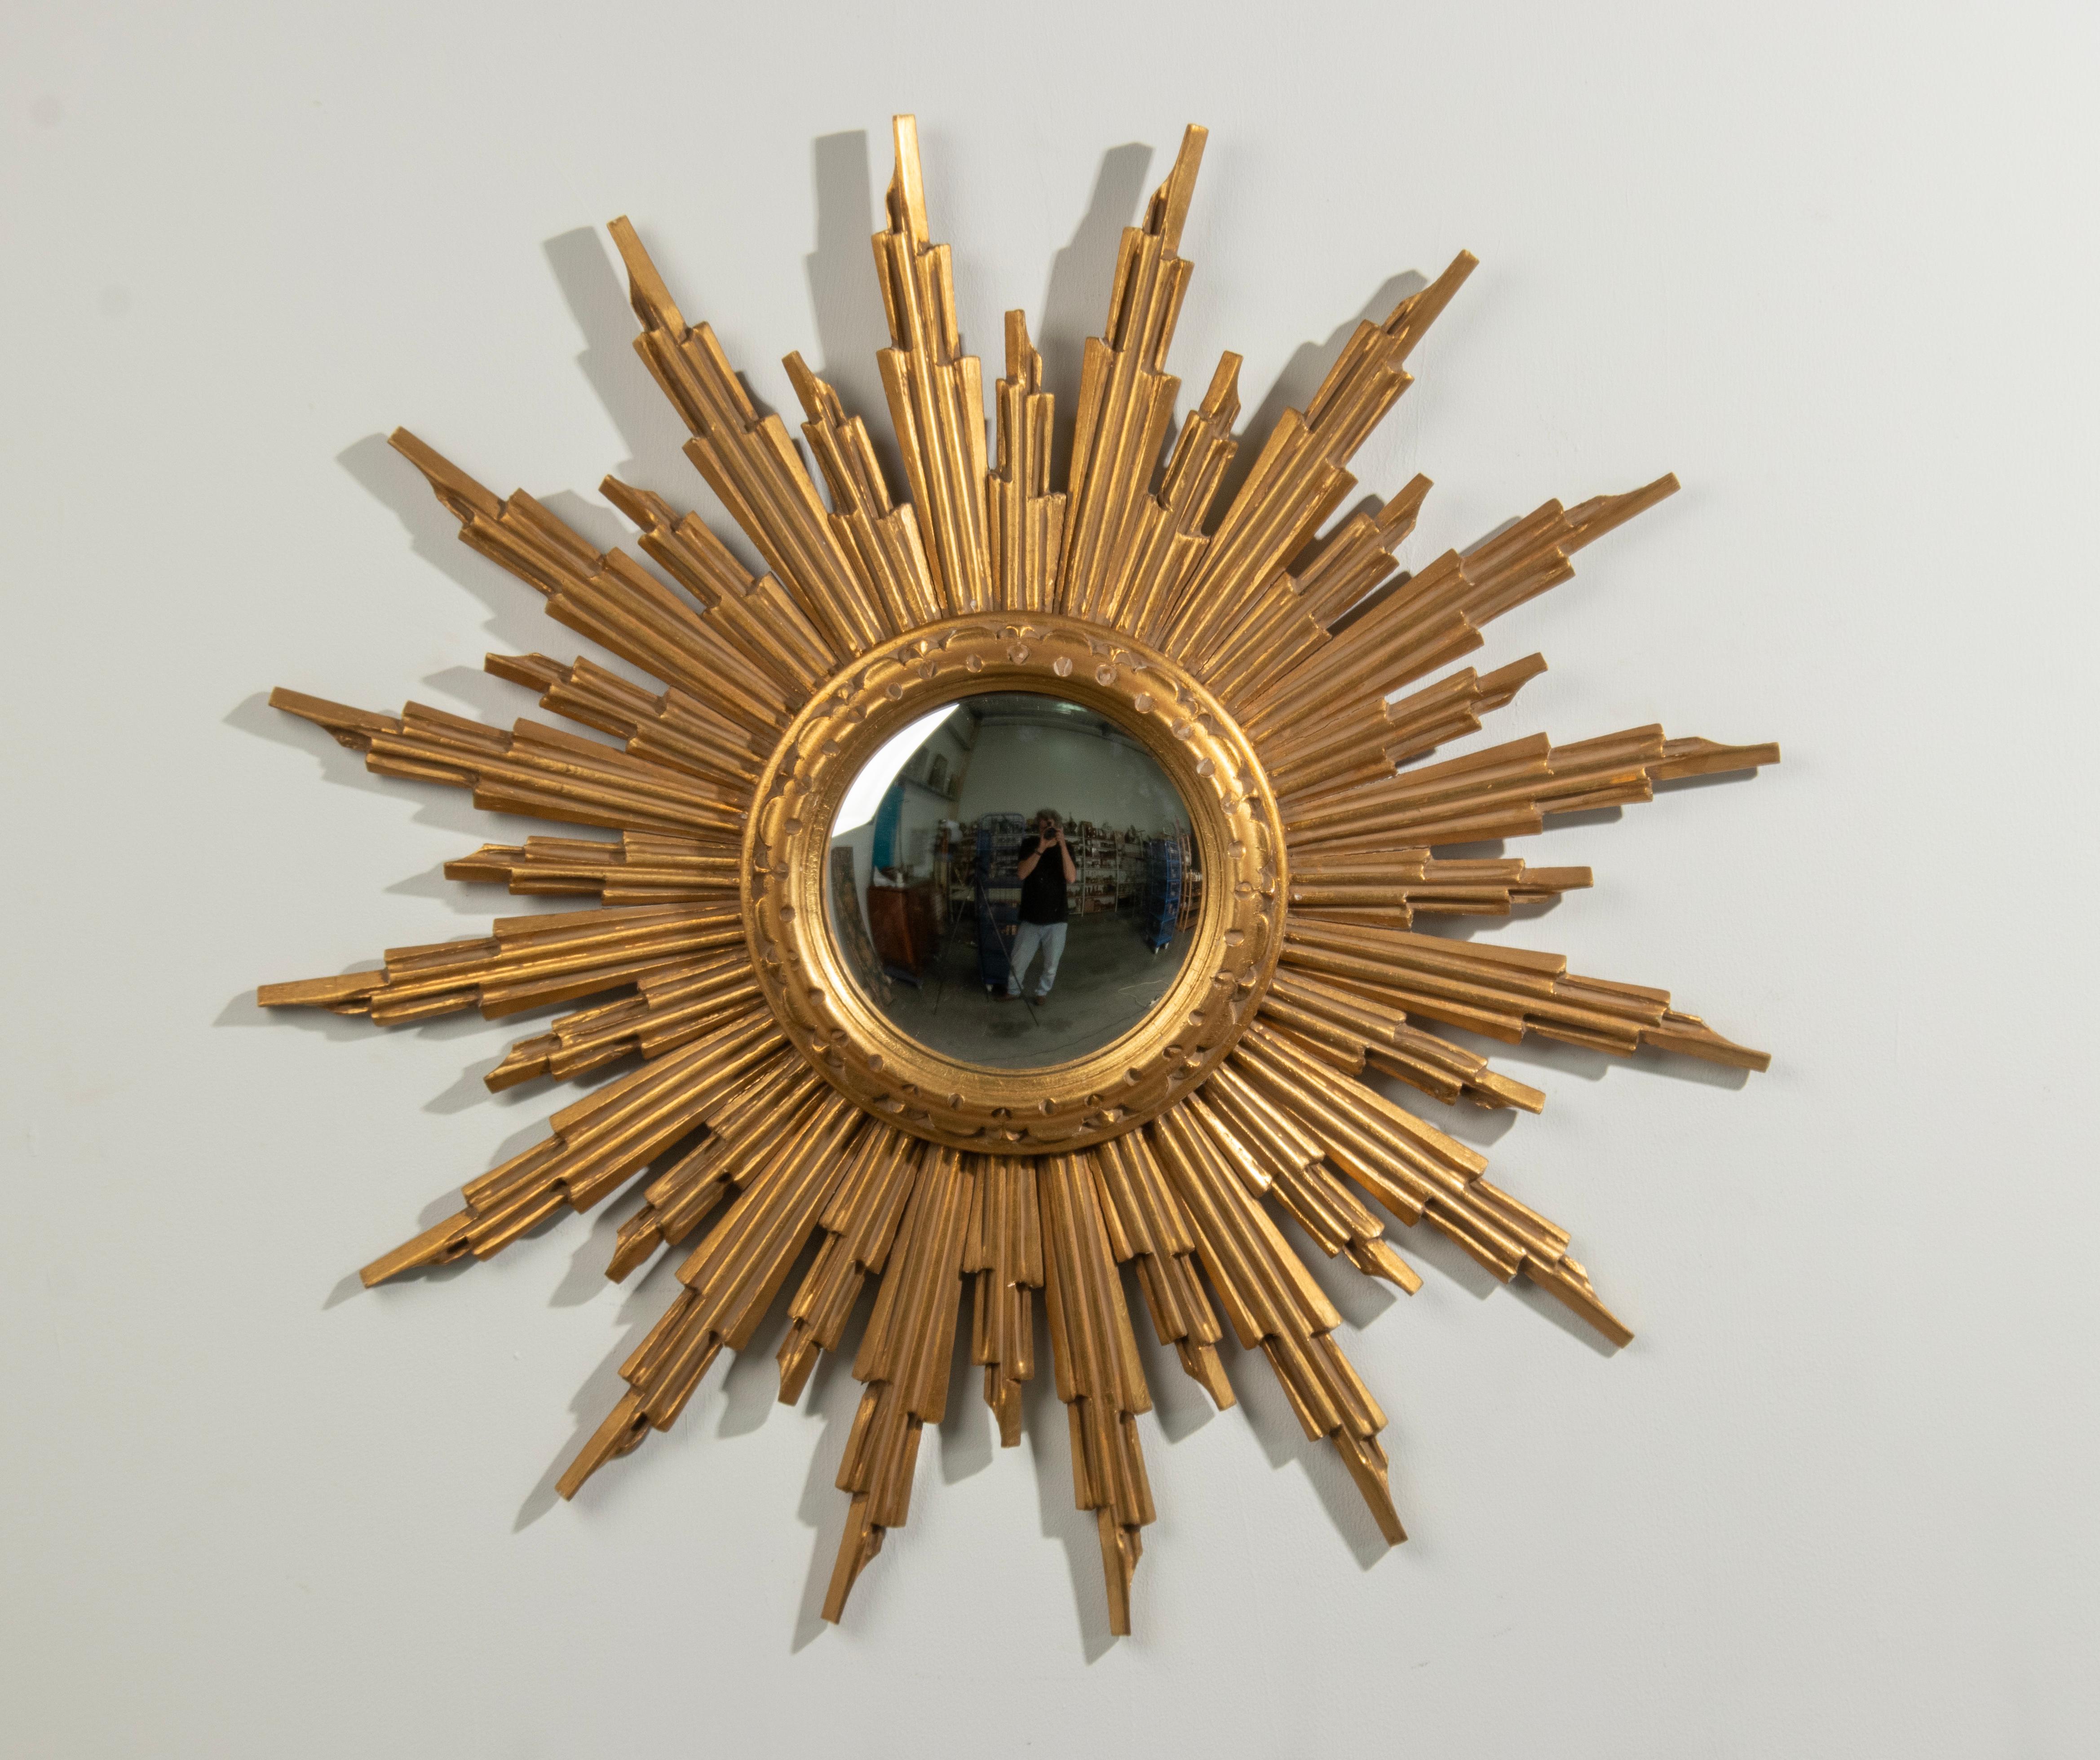 Magnifique miroir convexe en bois doré avec rayons multiples sculptés à la main. Le cadre est en bois, magnifiquement sculpté à la main. Avec miroir en verre convexe. 
 Datant d'environ 1950, fabriqué par A.I.C. Belgium, Bruxelles. Le Label original